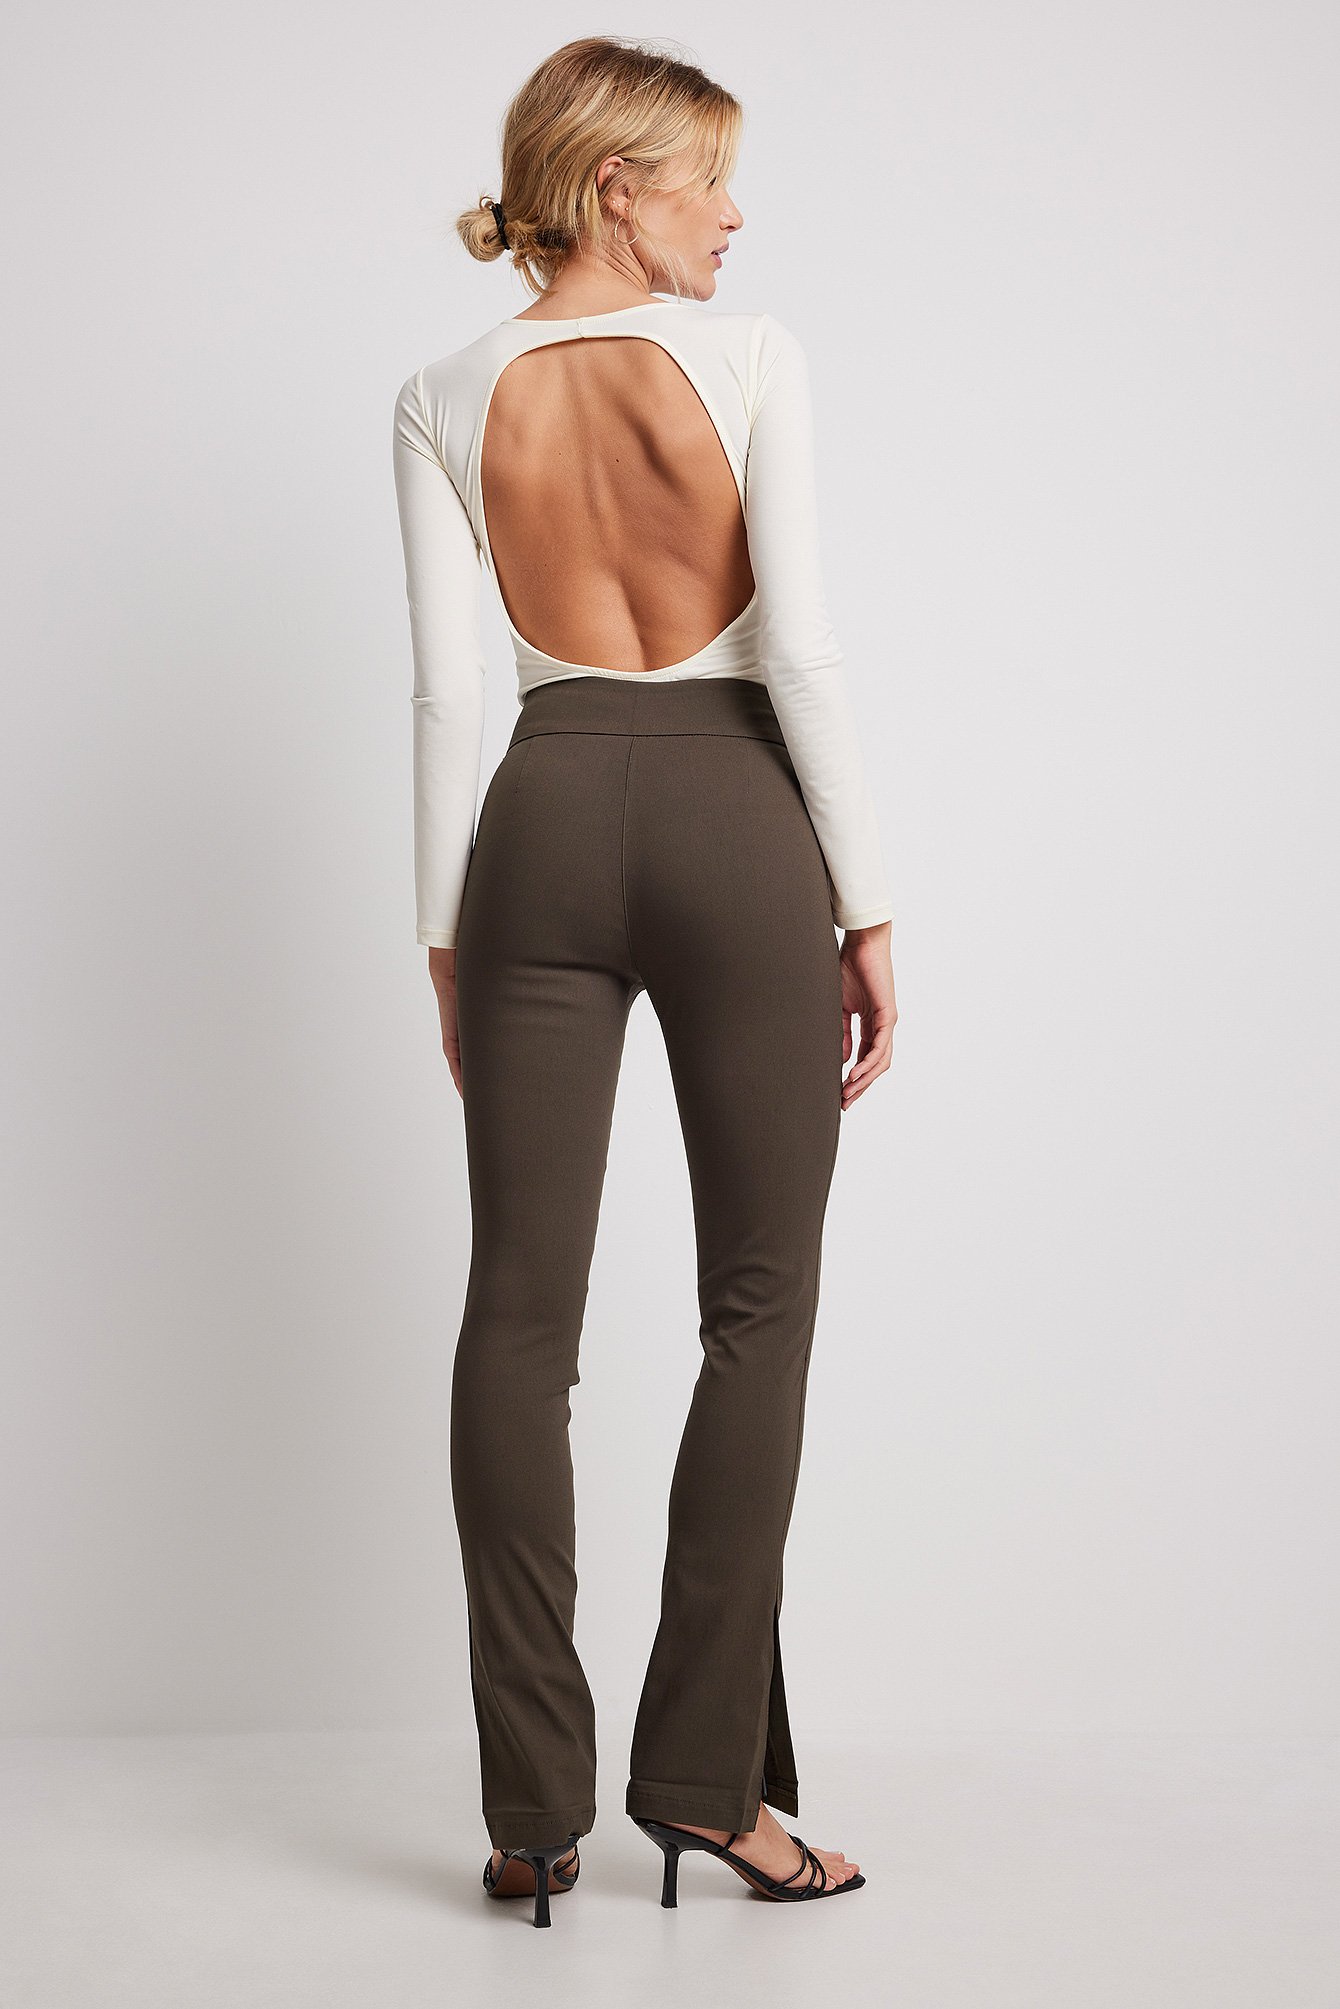 Brown Pantalones superelásticos slim fit con apertura